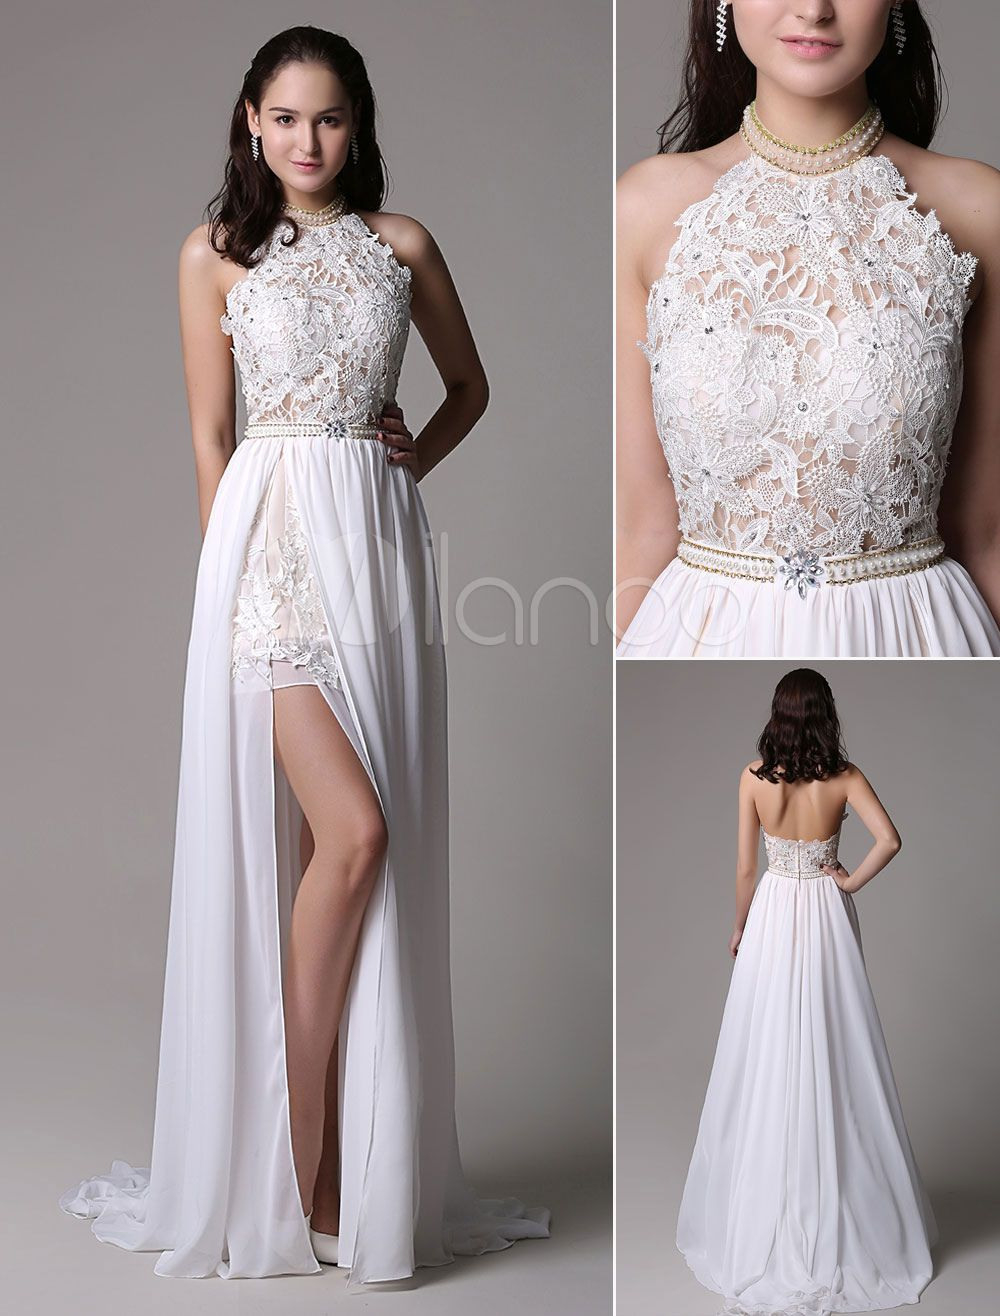 Designer Einfach Kleid Weiß Elegant VertriebFormal Luxus Kleid Weiß Elegant Stylish